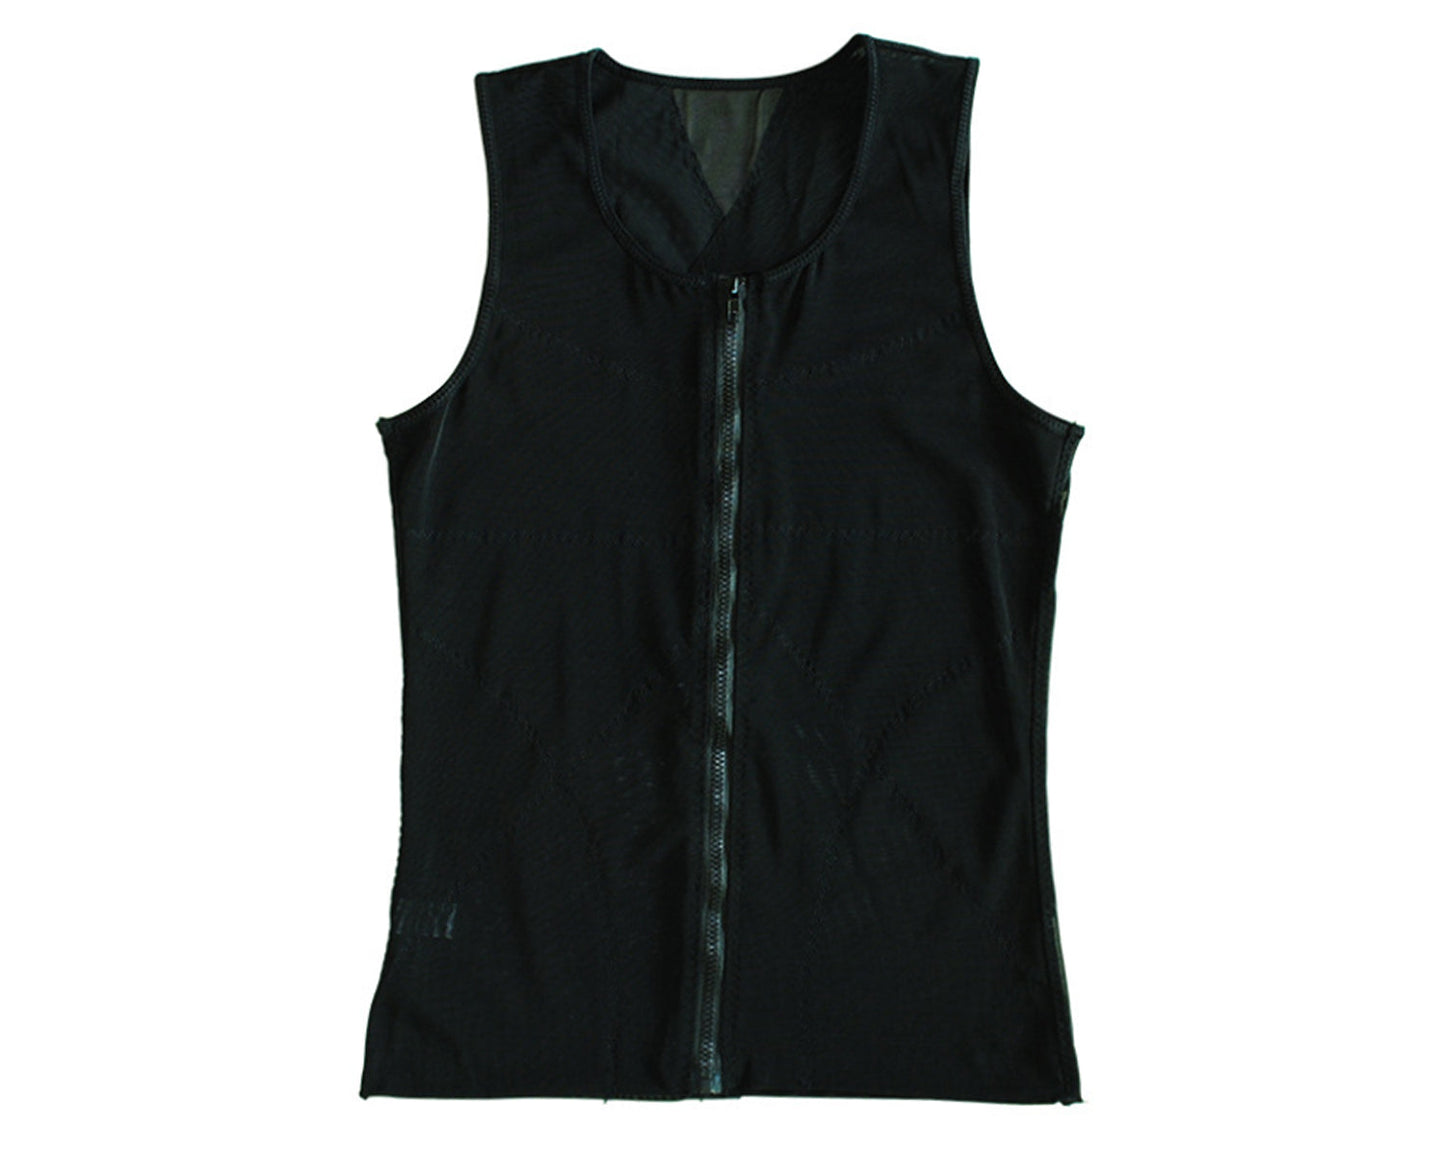 BN Men's Compression Zipper Vest